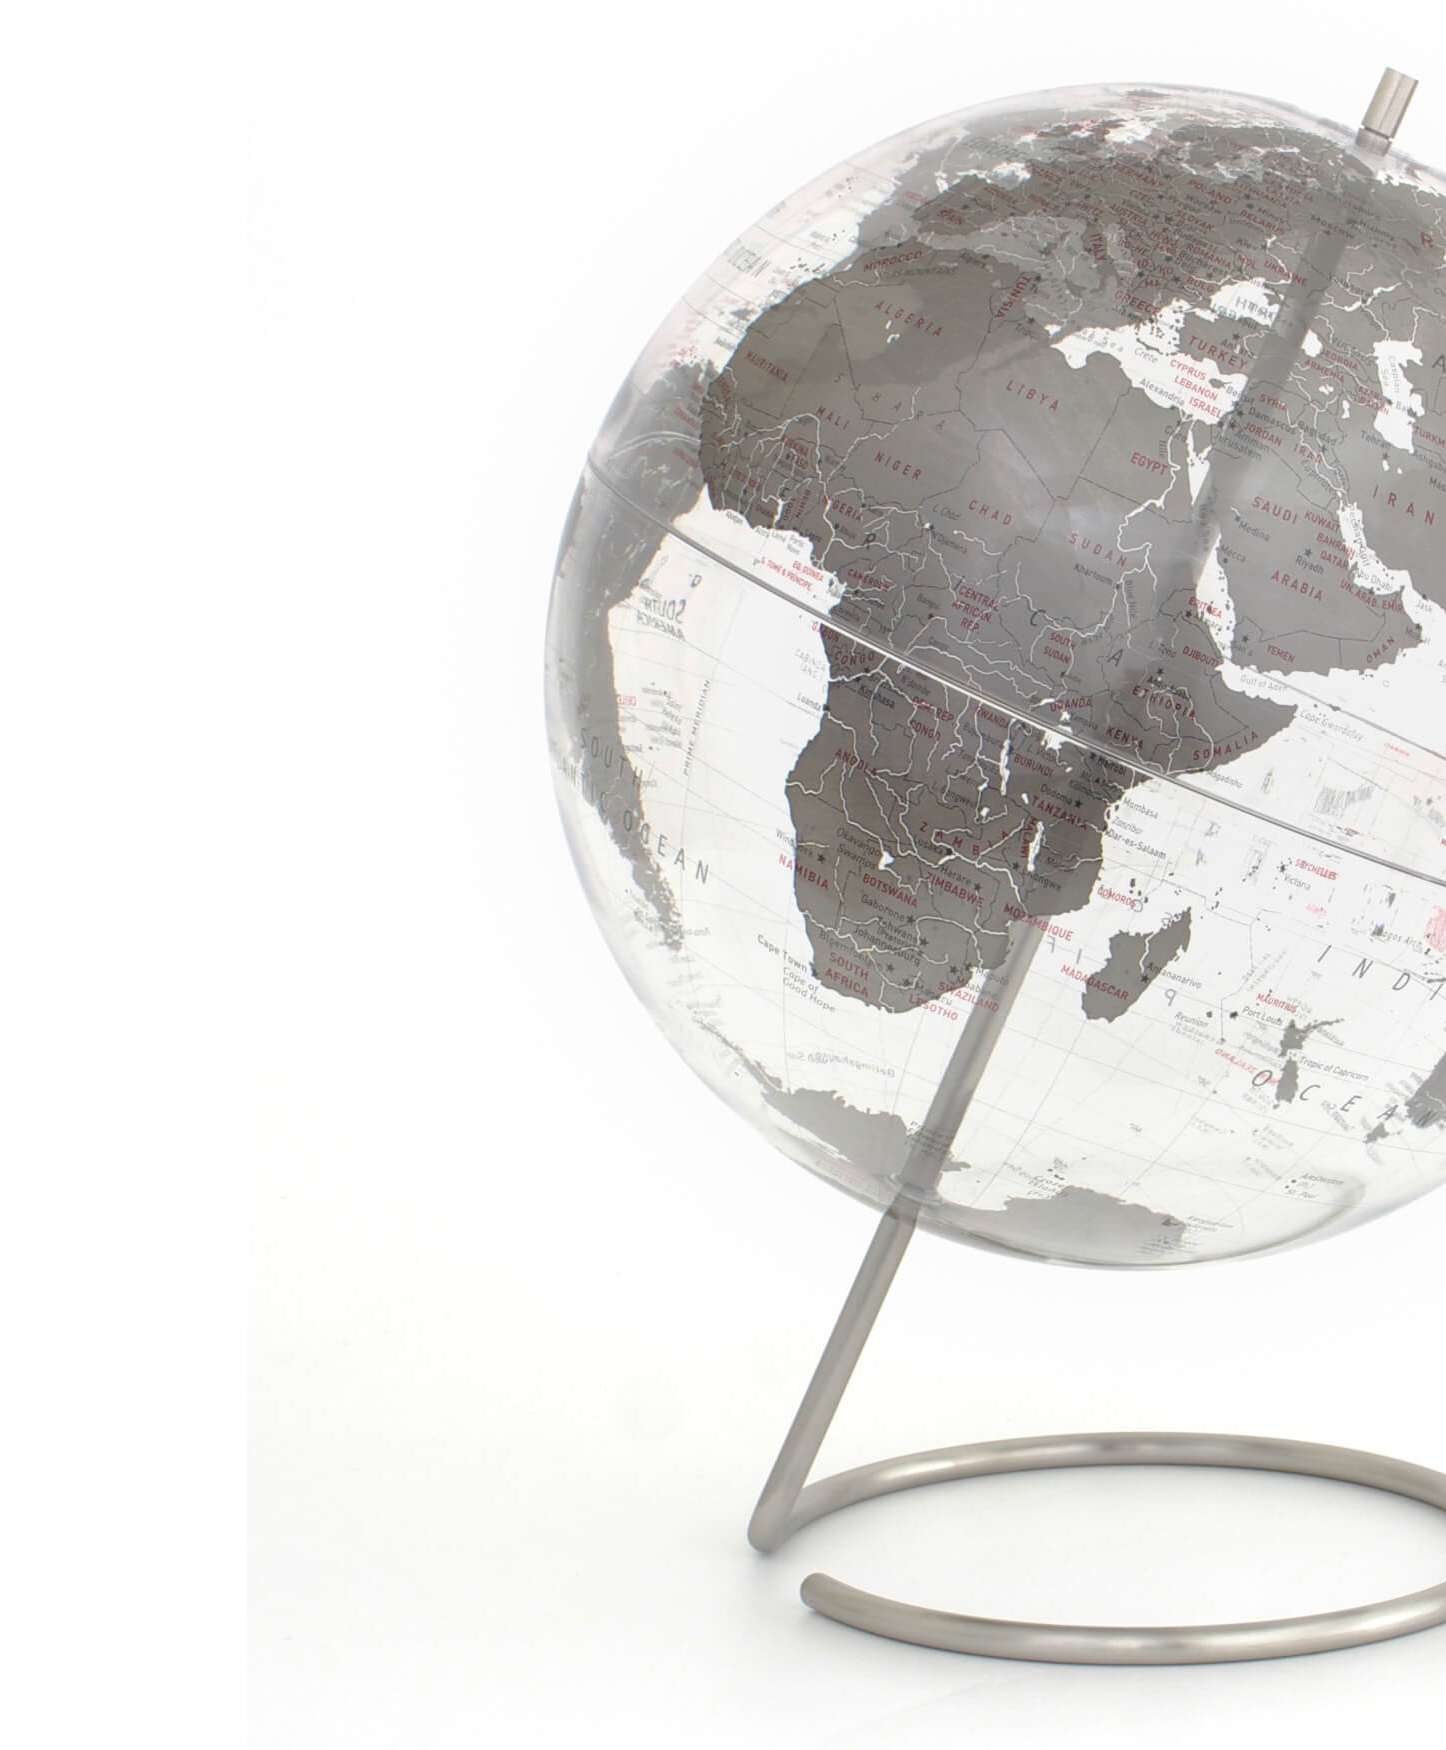 上品】 ルトン エトン80506 Crystal Marquise Globe クリスタルマーキス グローブ Replogle Globes社  Silver 並行輸入